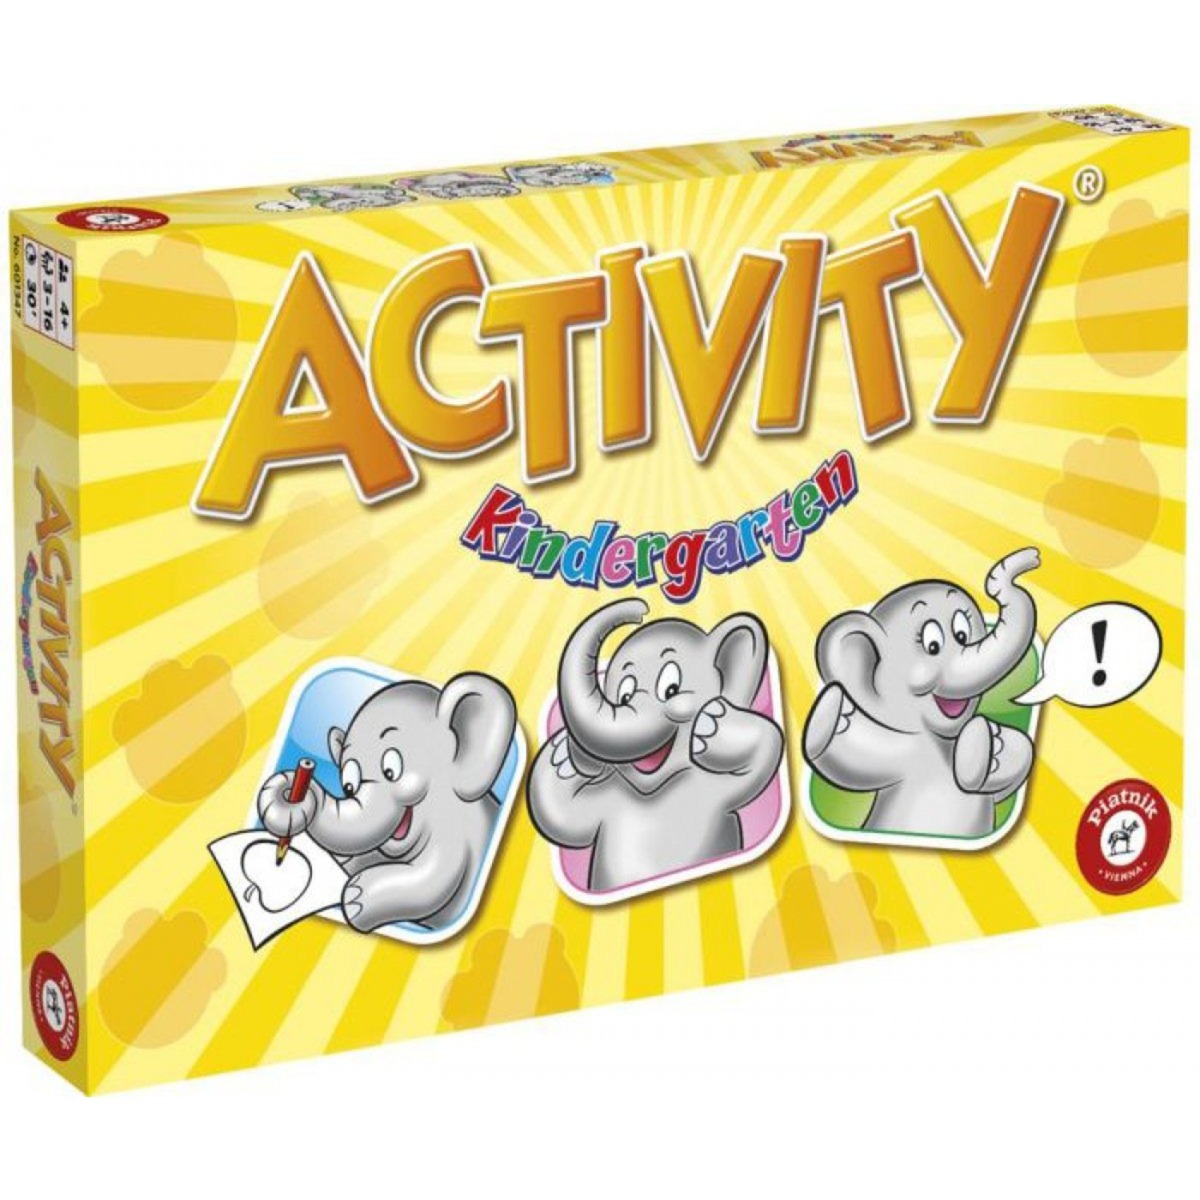 Image of Alternate - Activity Kindergarten, Partyspiel online einkaufen bei Alternate